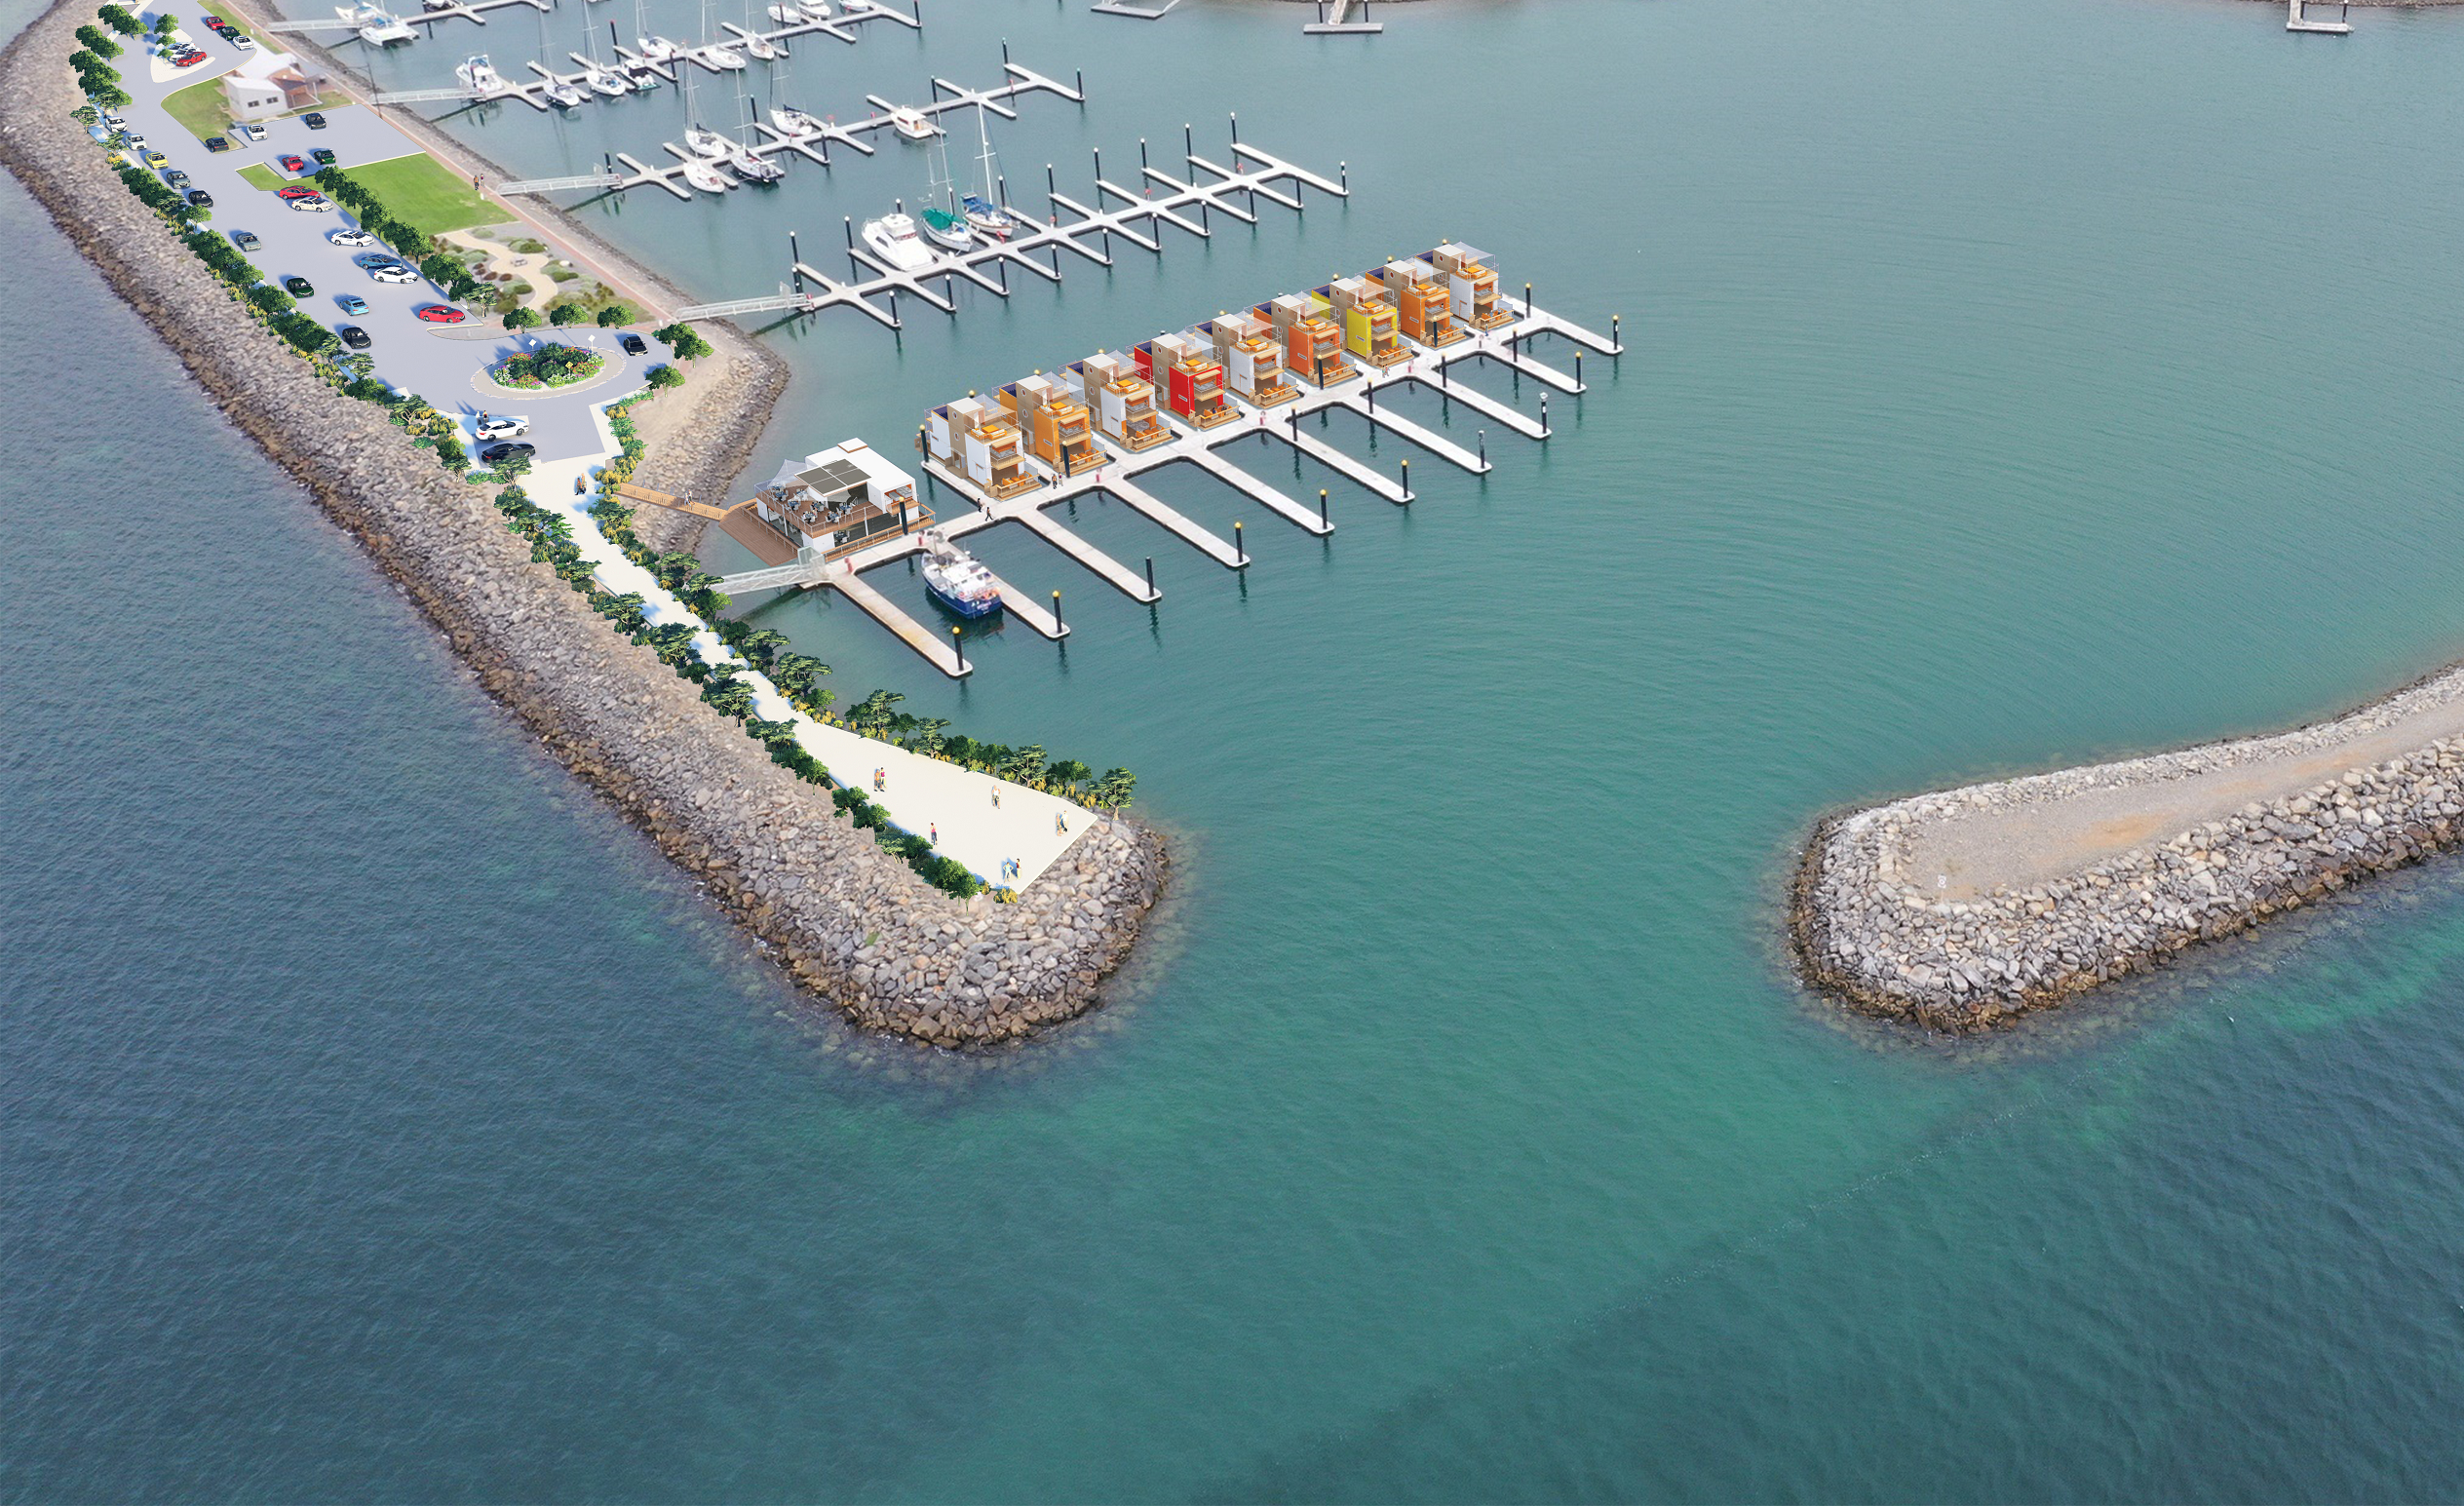 Unique ‘floating homes’ planned for $40m Dockside Port Vincent tourism hub